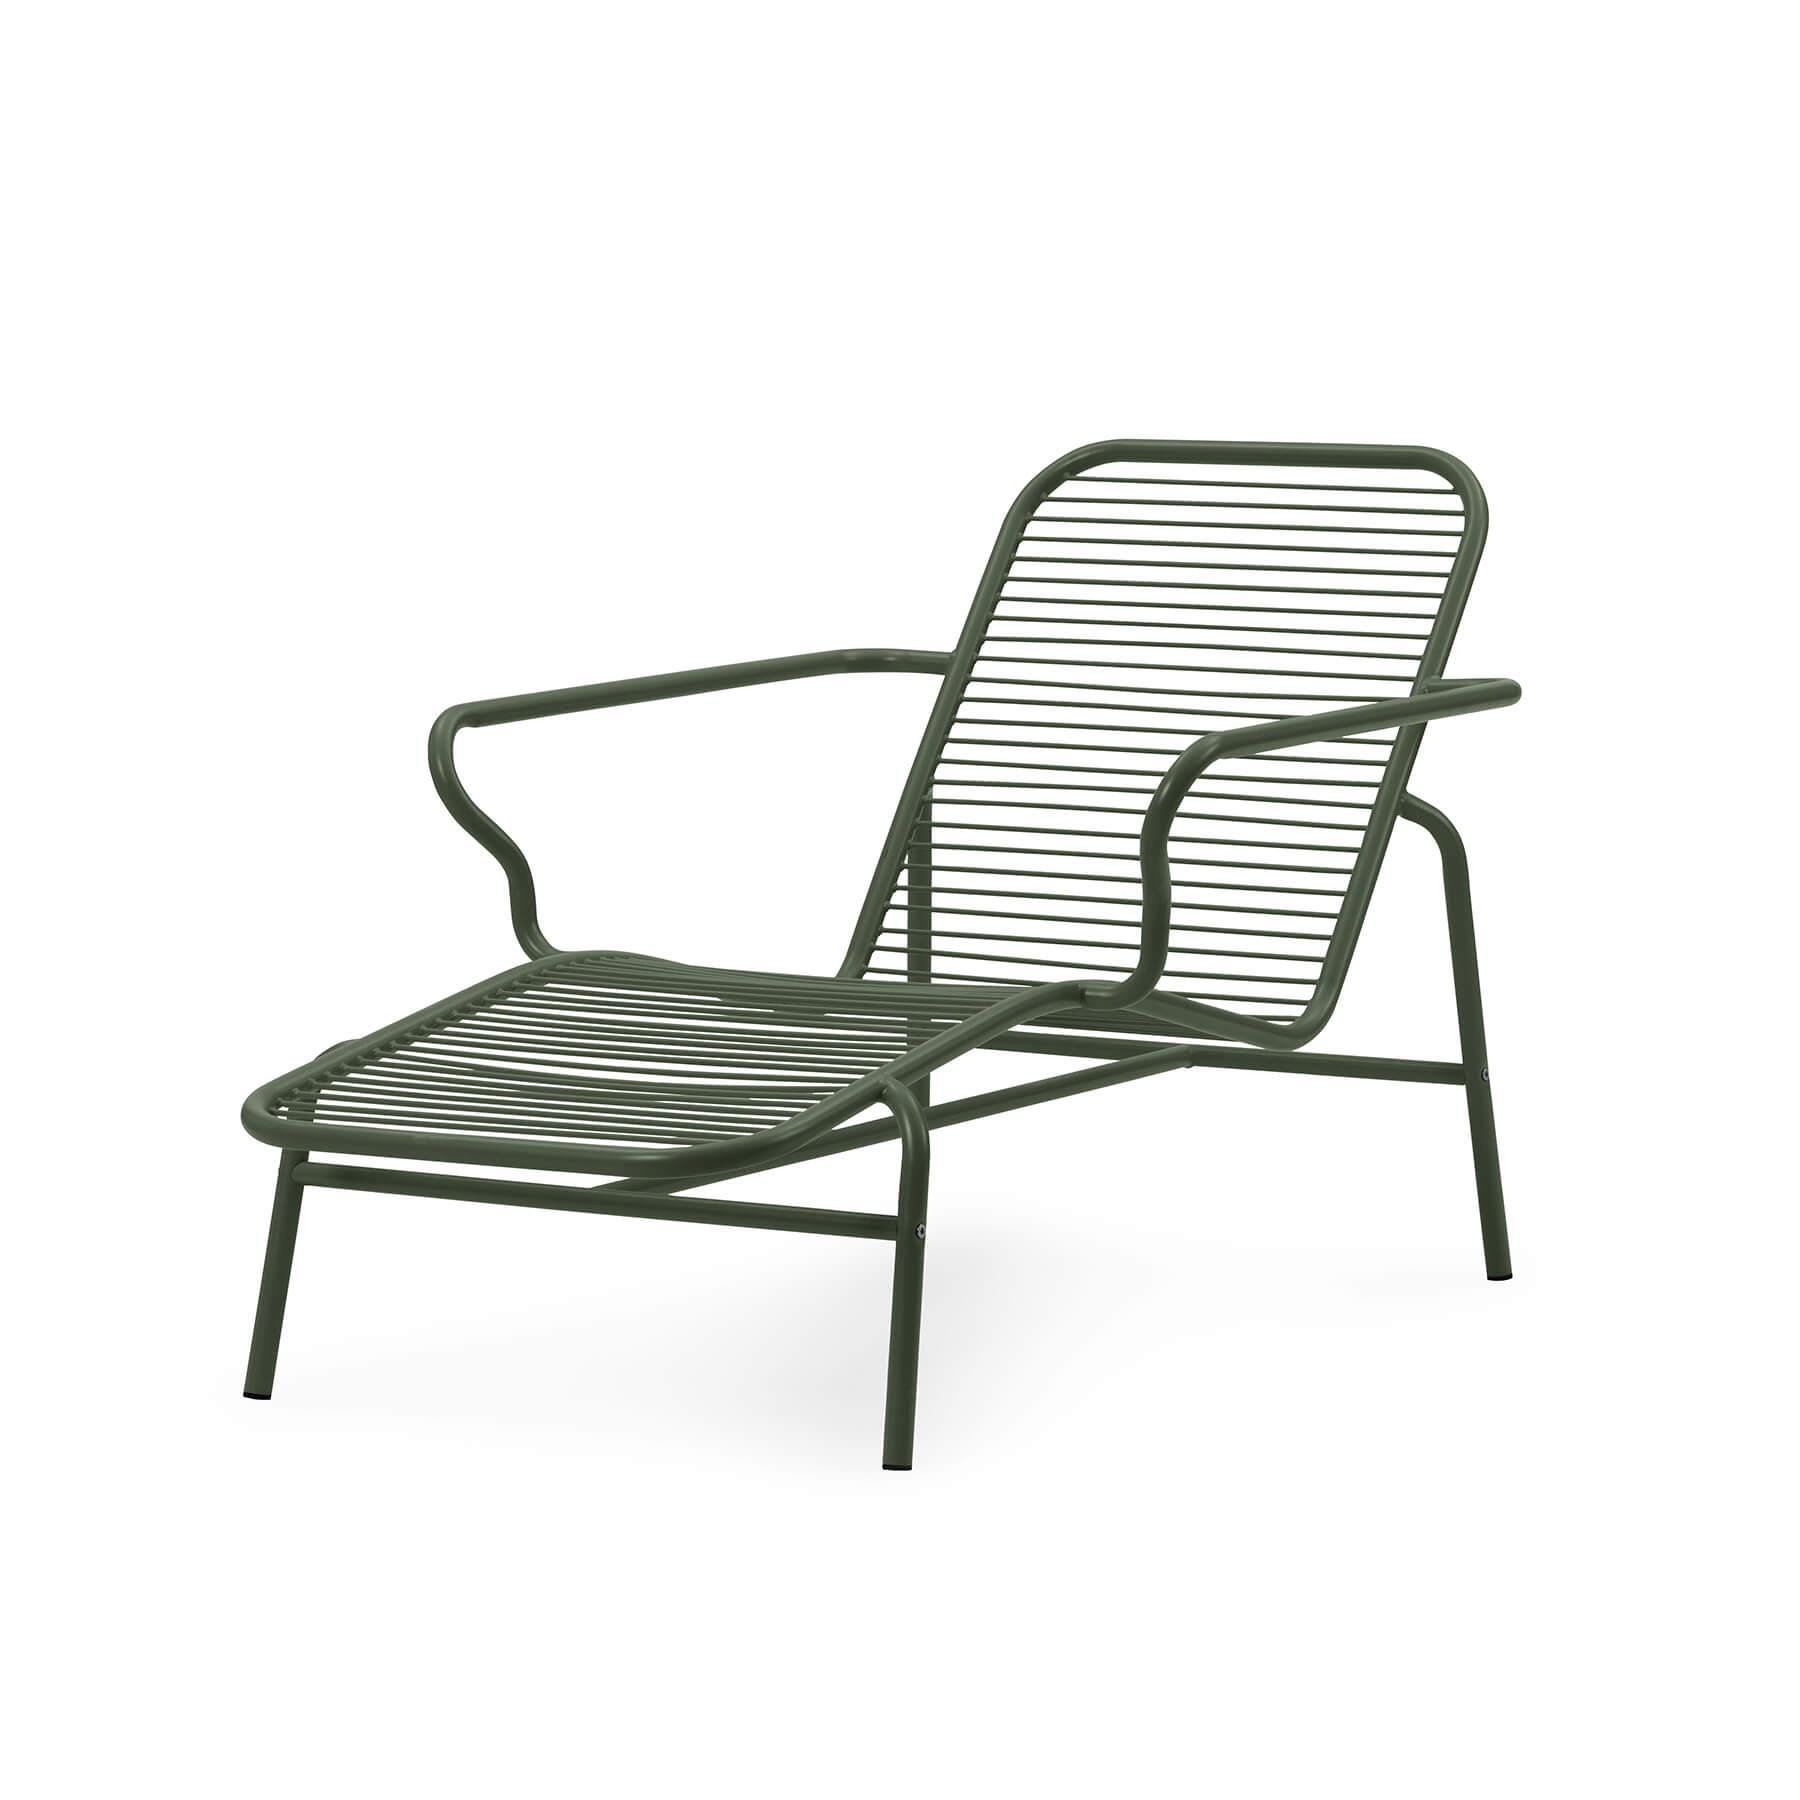 Normann Copenhagen Vig Garden Chaise Lounge Chair Dark Green Designer Furniture From Holloways Of Ludlow